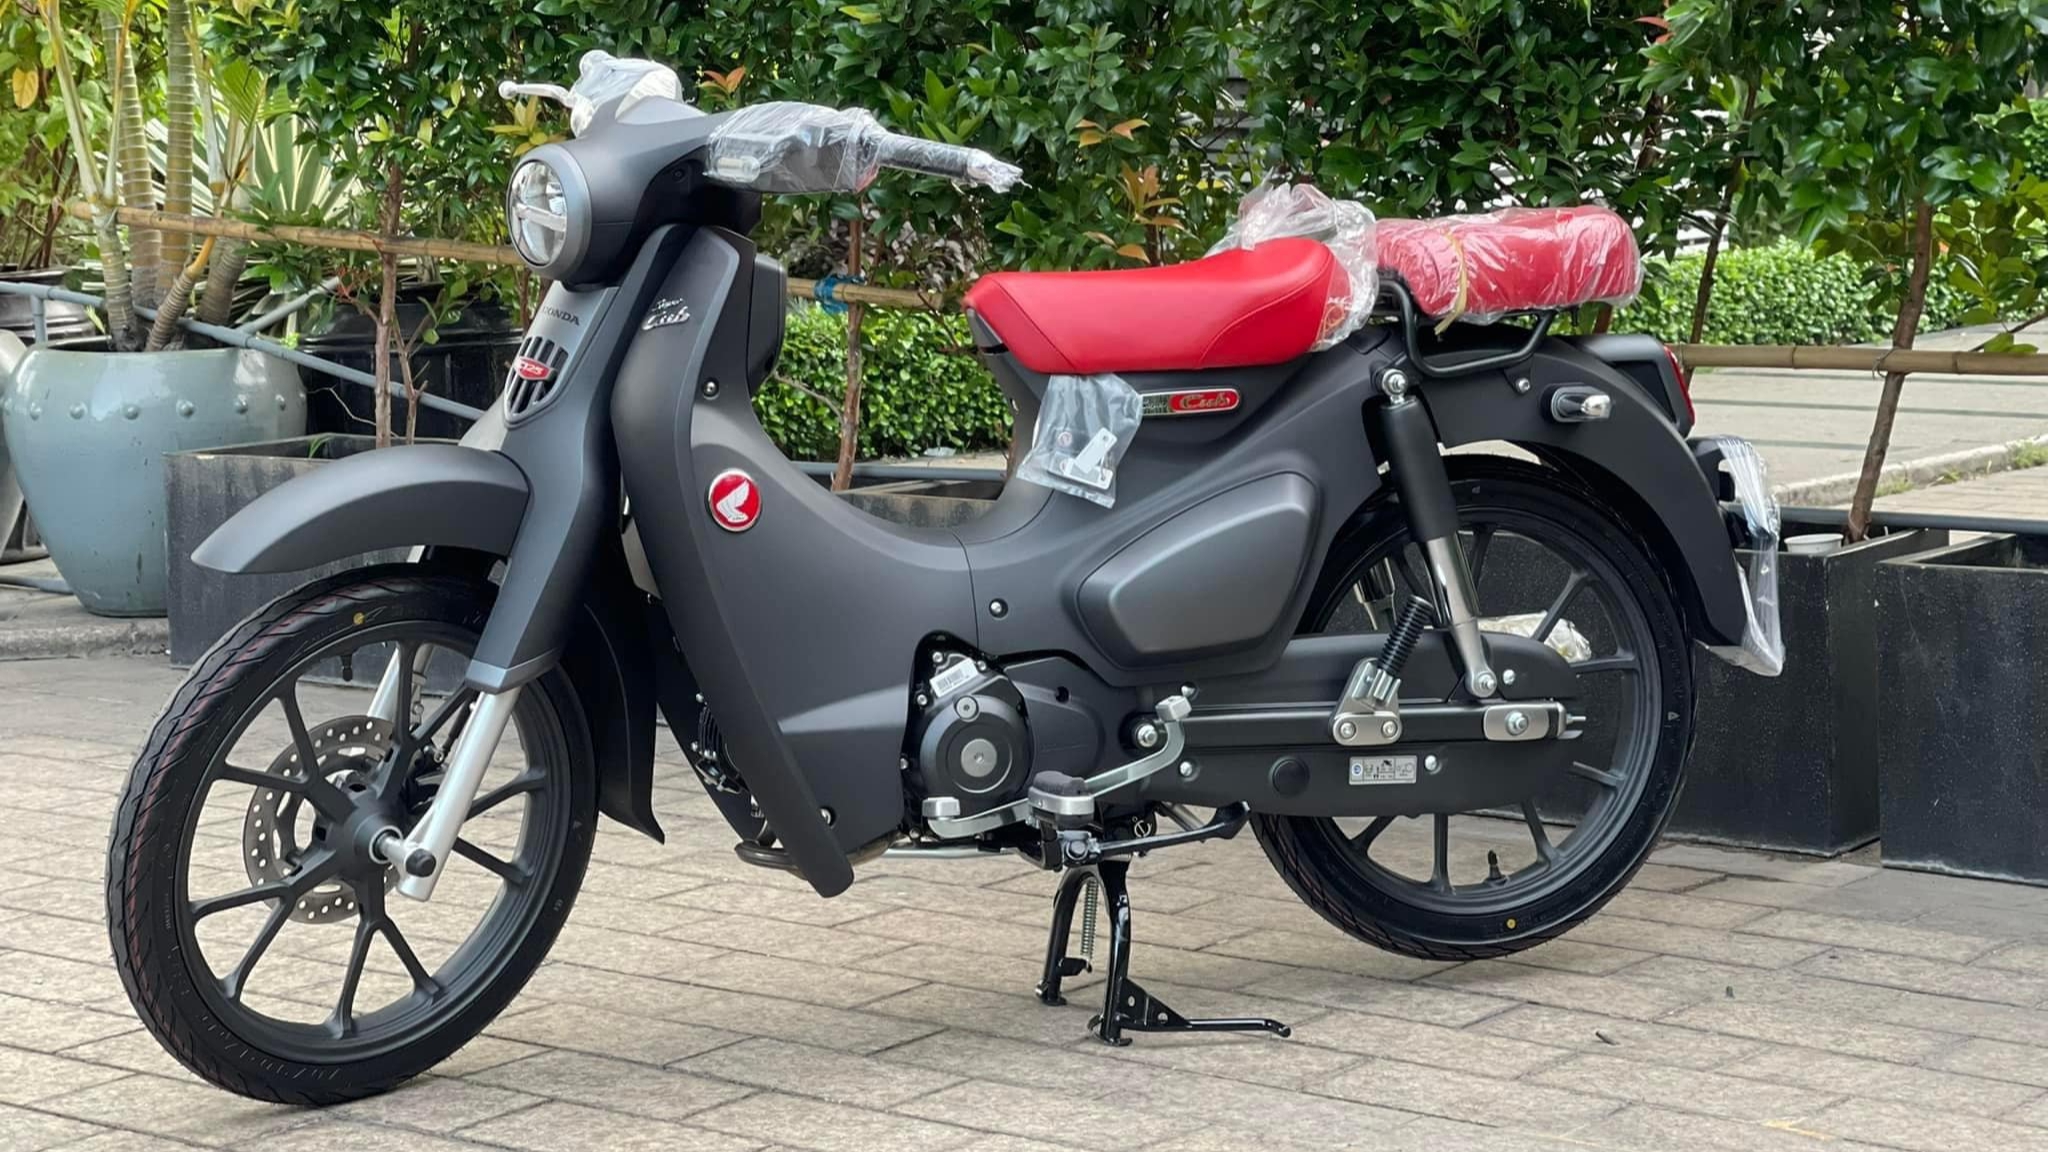 Xe máy Super Cub Classic 125cc nhập khẩu Nhật Bảngiá tốt nhất Việt  NamKhuyễn mãi nhiều phần quàHỗ trợ mua Trả góp